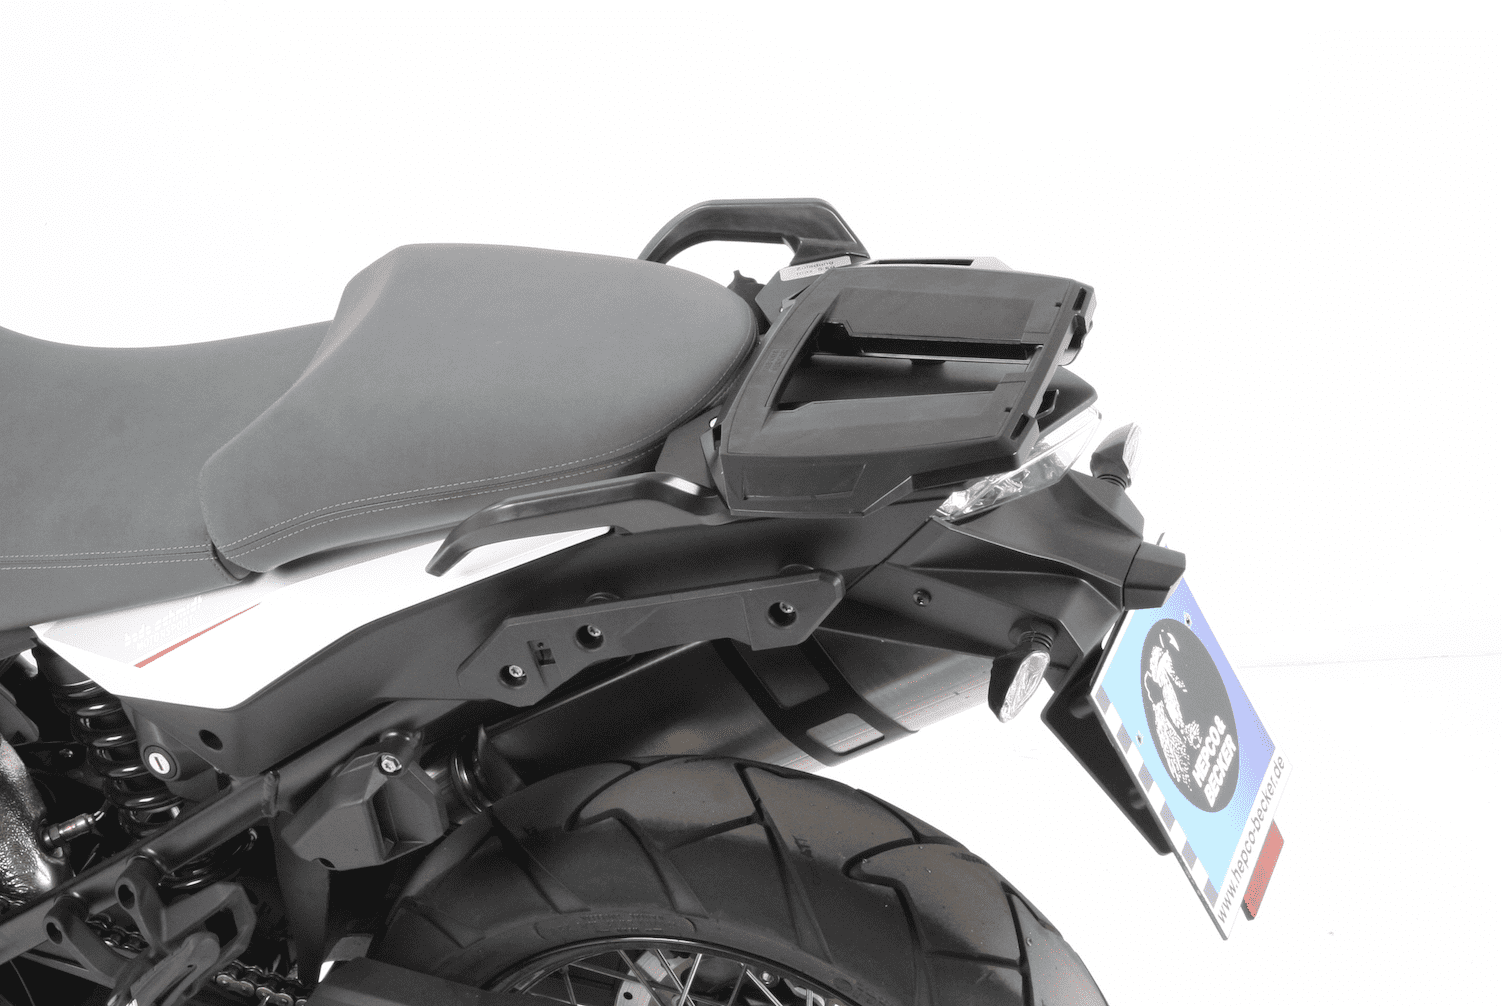 Alurack topcasecarrier black for KTM 1290 Super Adventure (2015-2020)